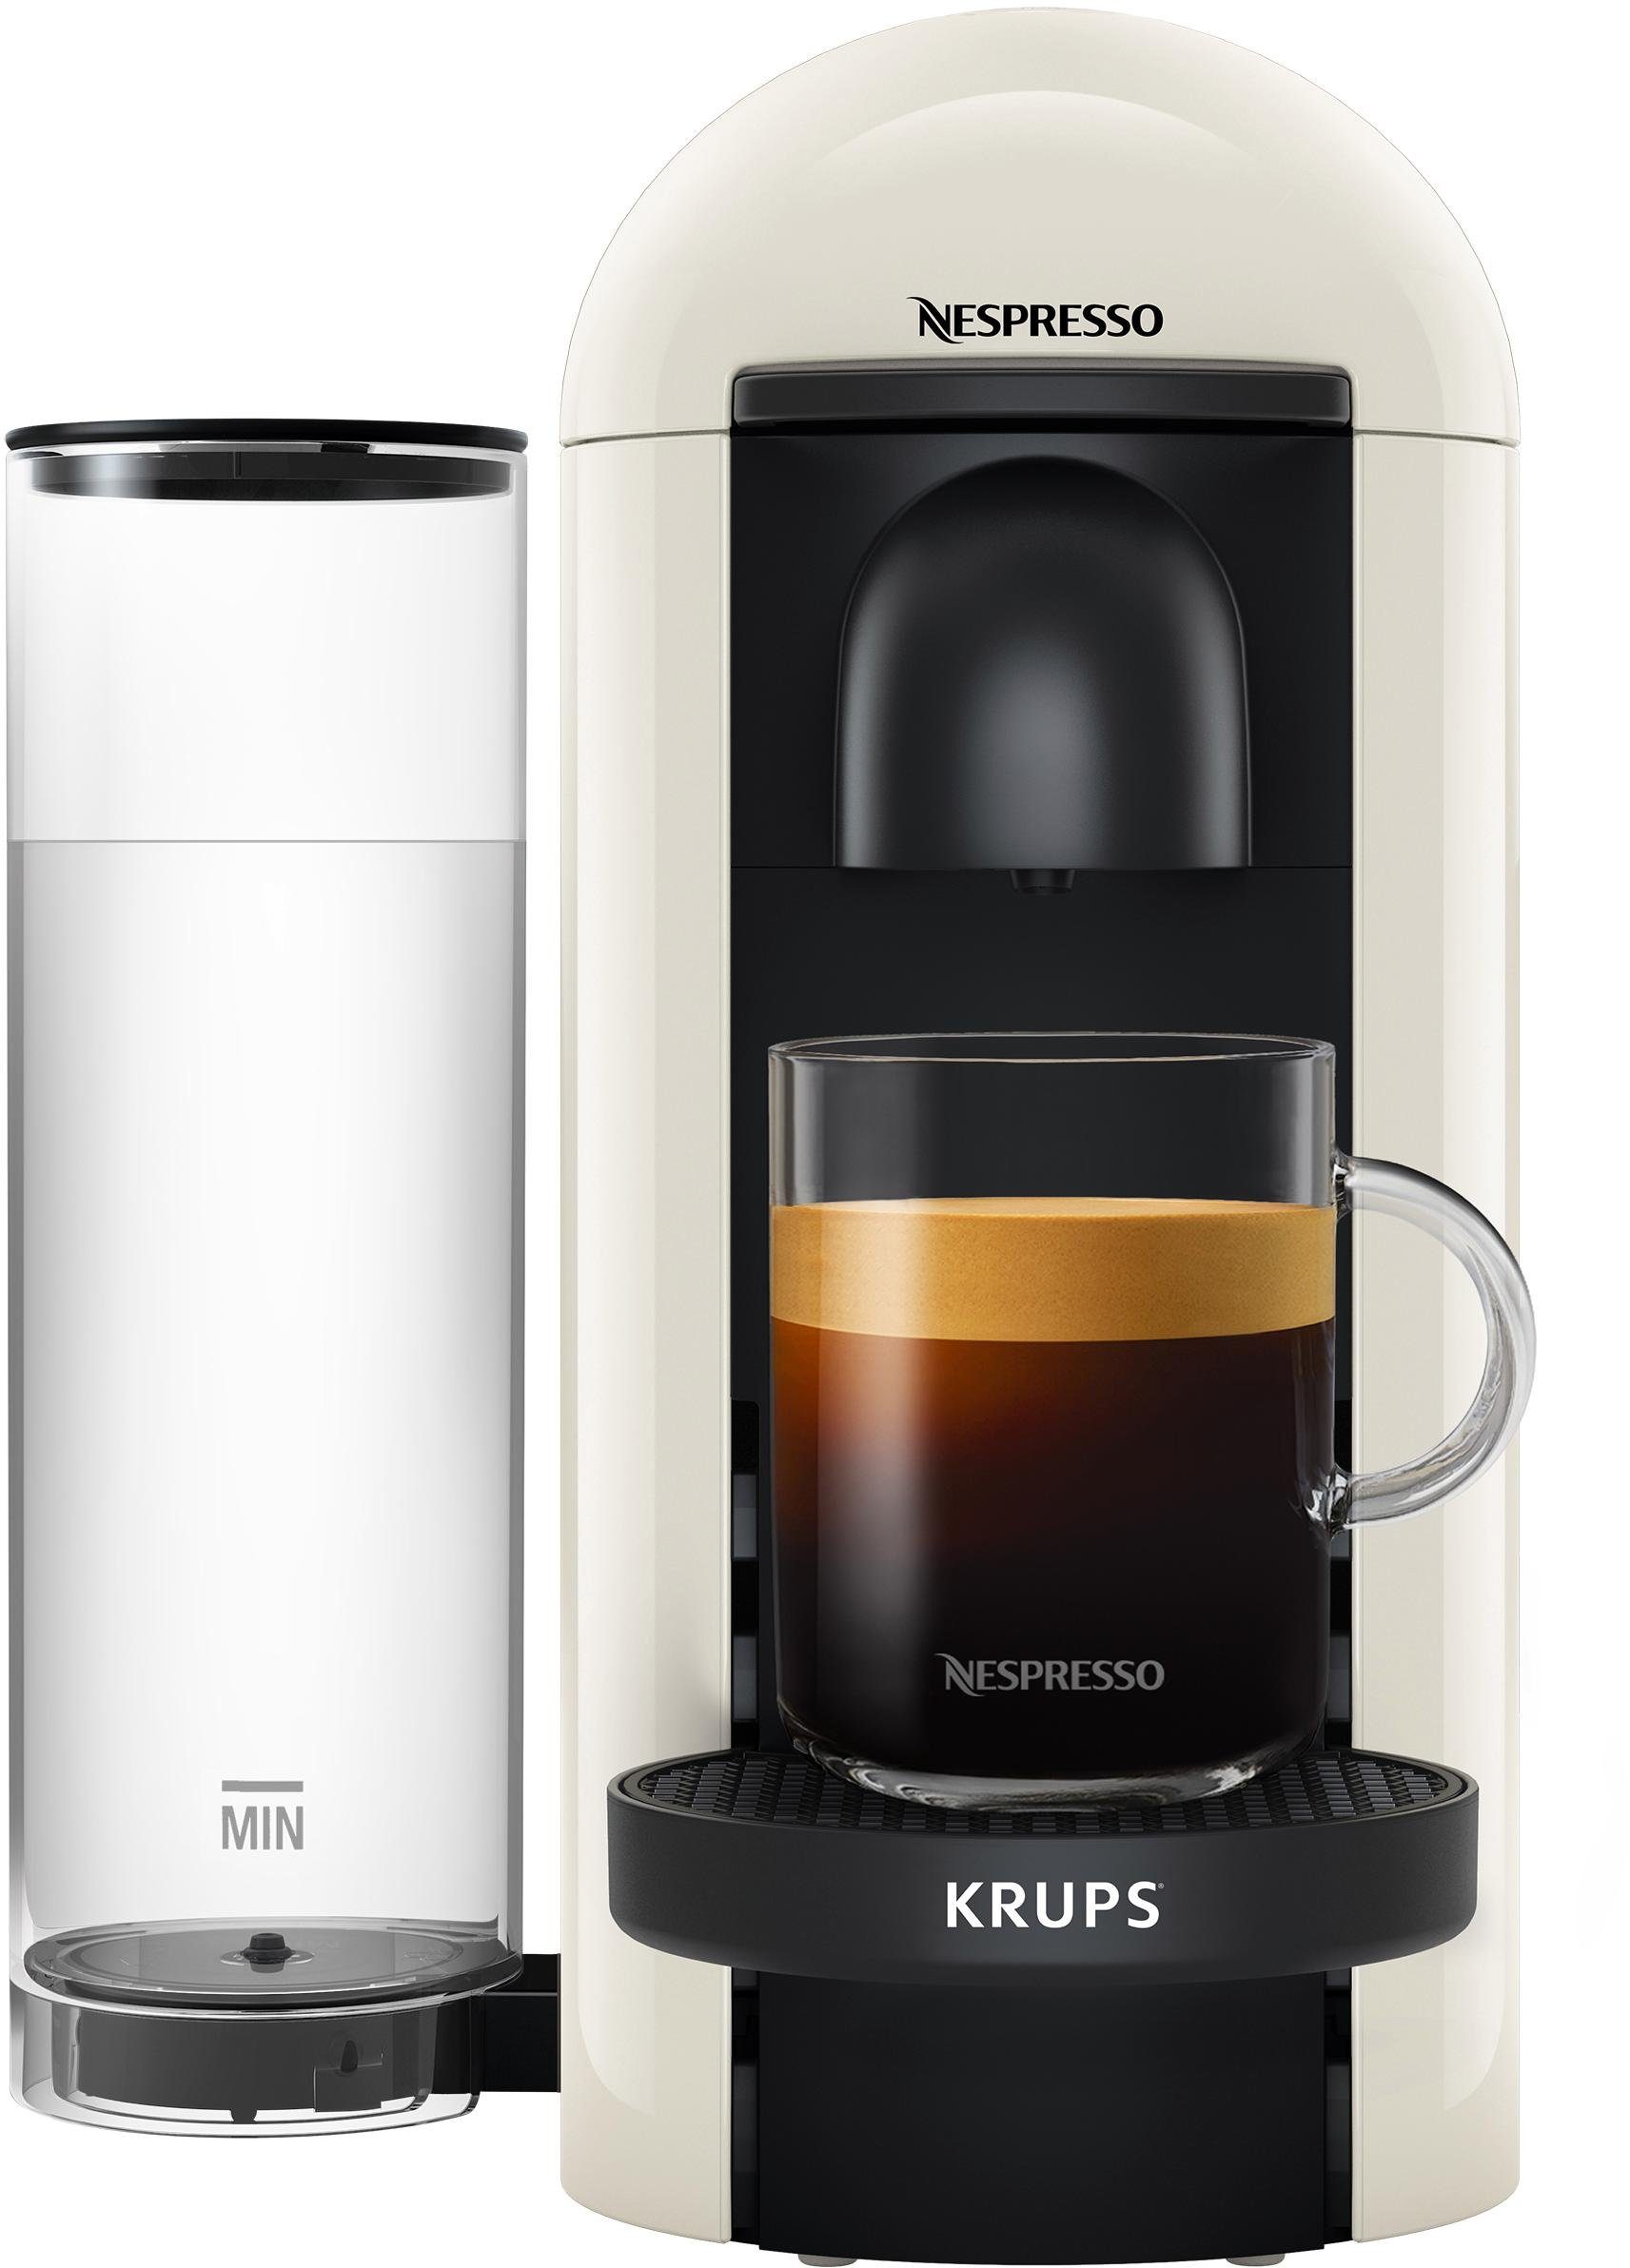 Nespresso Kapselmaschine XN9031 mit Krups, Kapselerkennung durch Kapseln Plus 12 von Vertuo Willkommenspaket inkl. Barcode